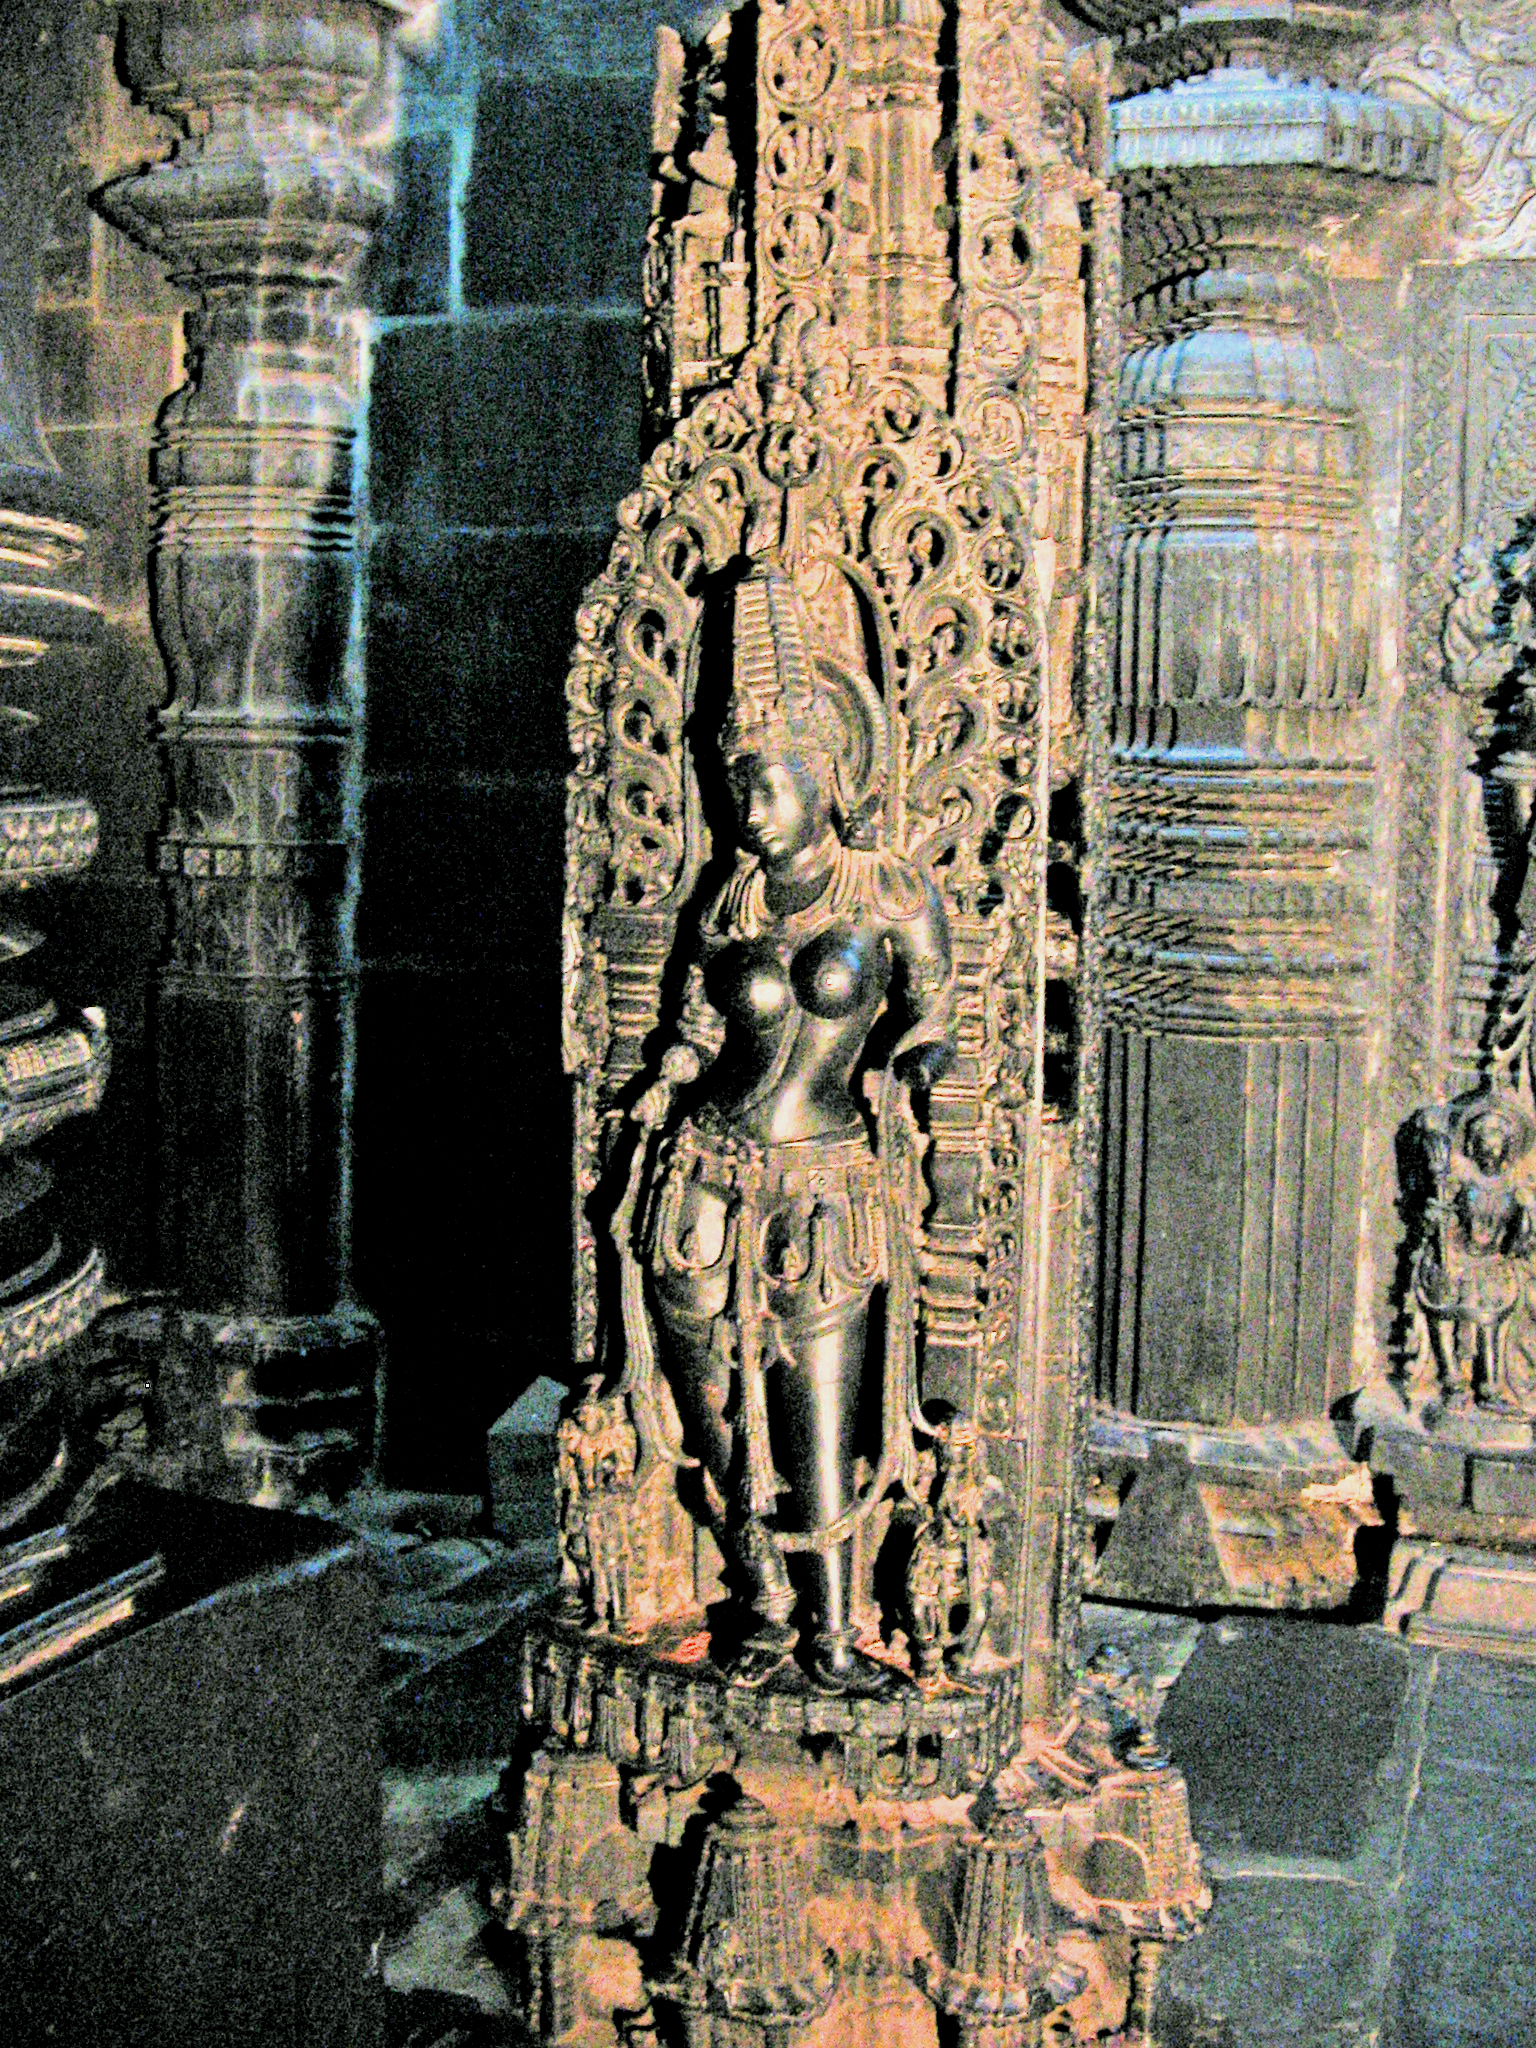 Chennakeshava Temple, Belur - Wikipedia